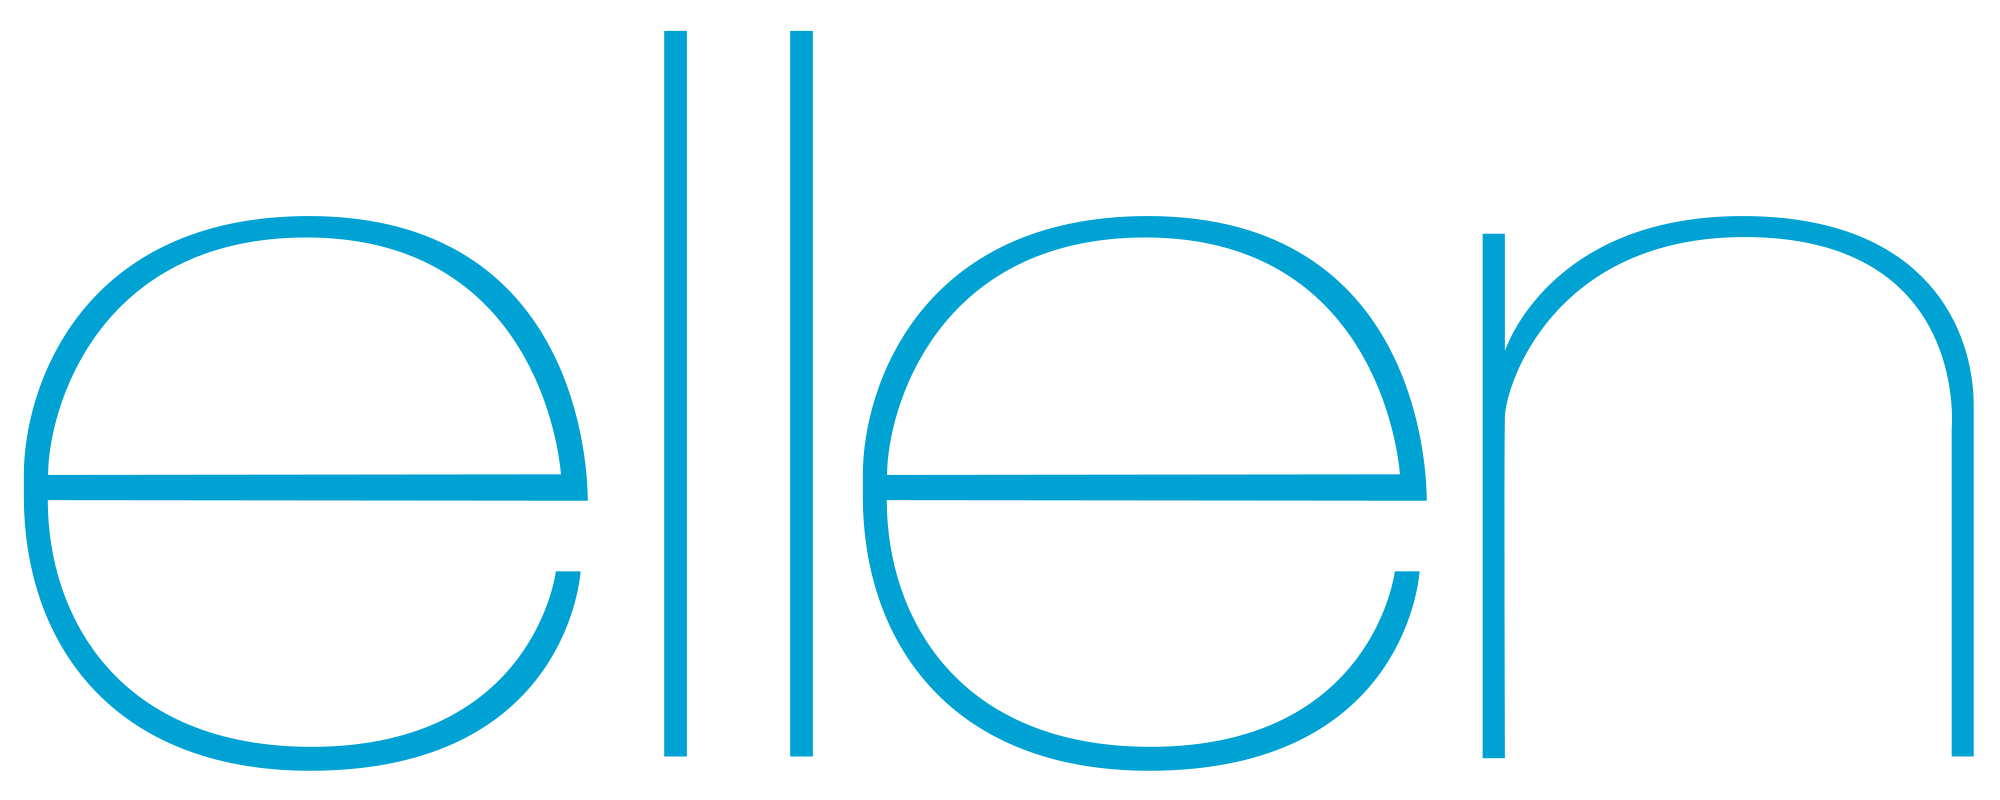 Ellen Logo - File:Ellen.svg - Wikimedia Commons